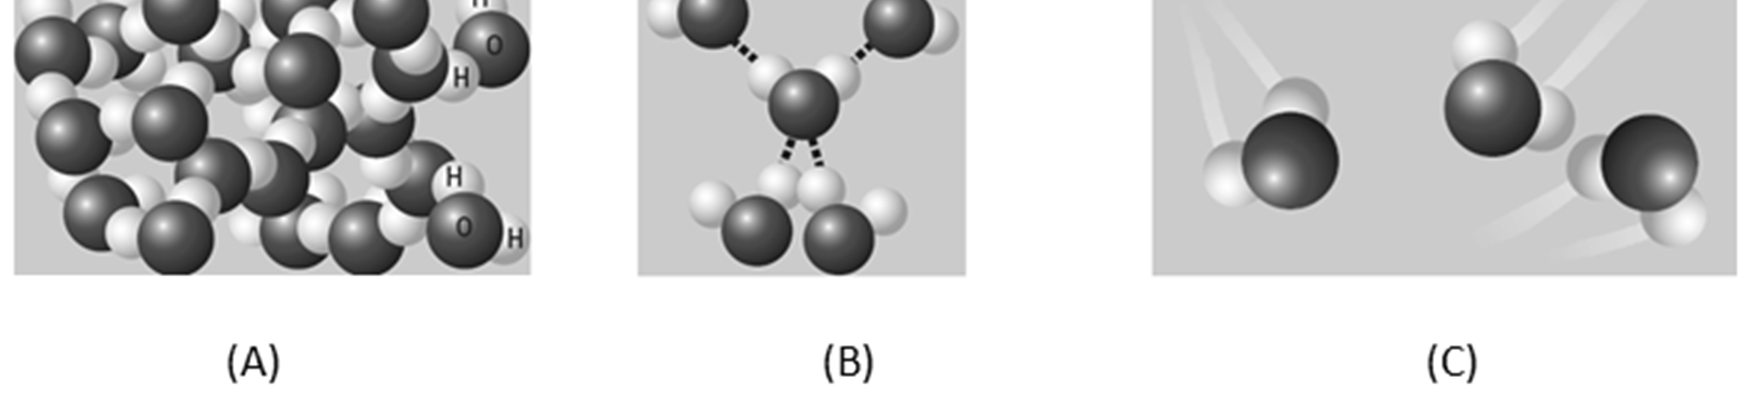 Fluidos (A) Cristais de gelo e o modelo da organização das partículas constituintes da substância no estado sólido.